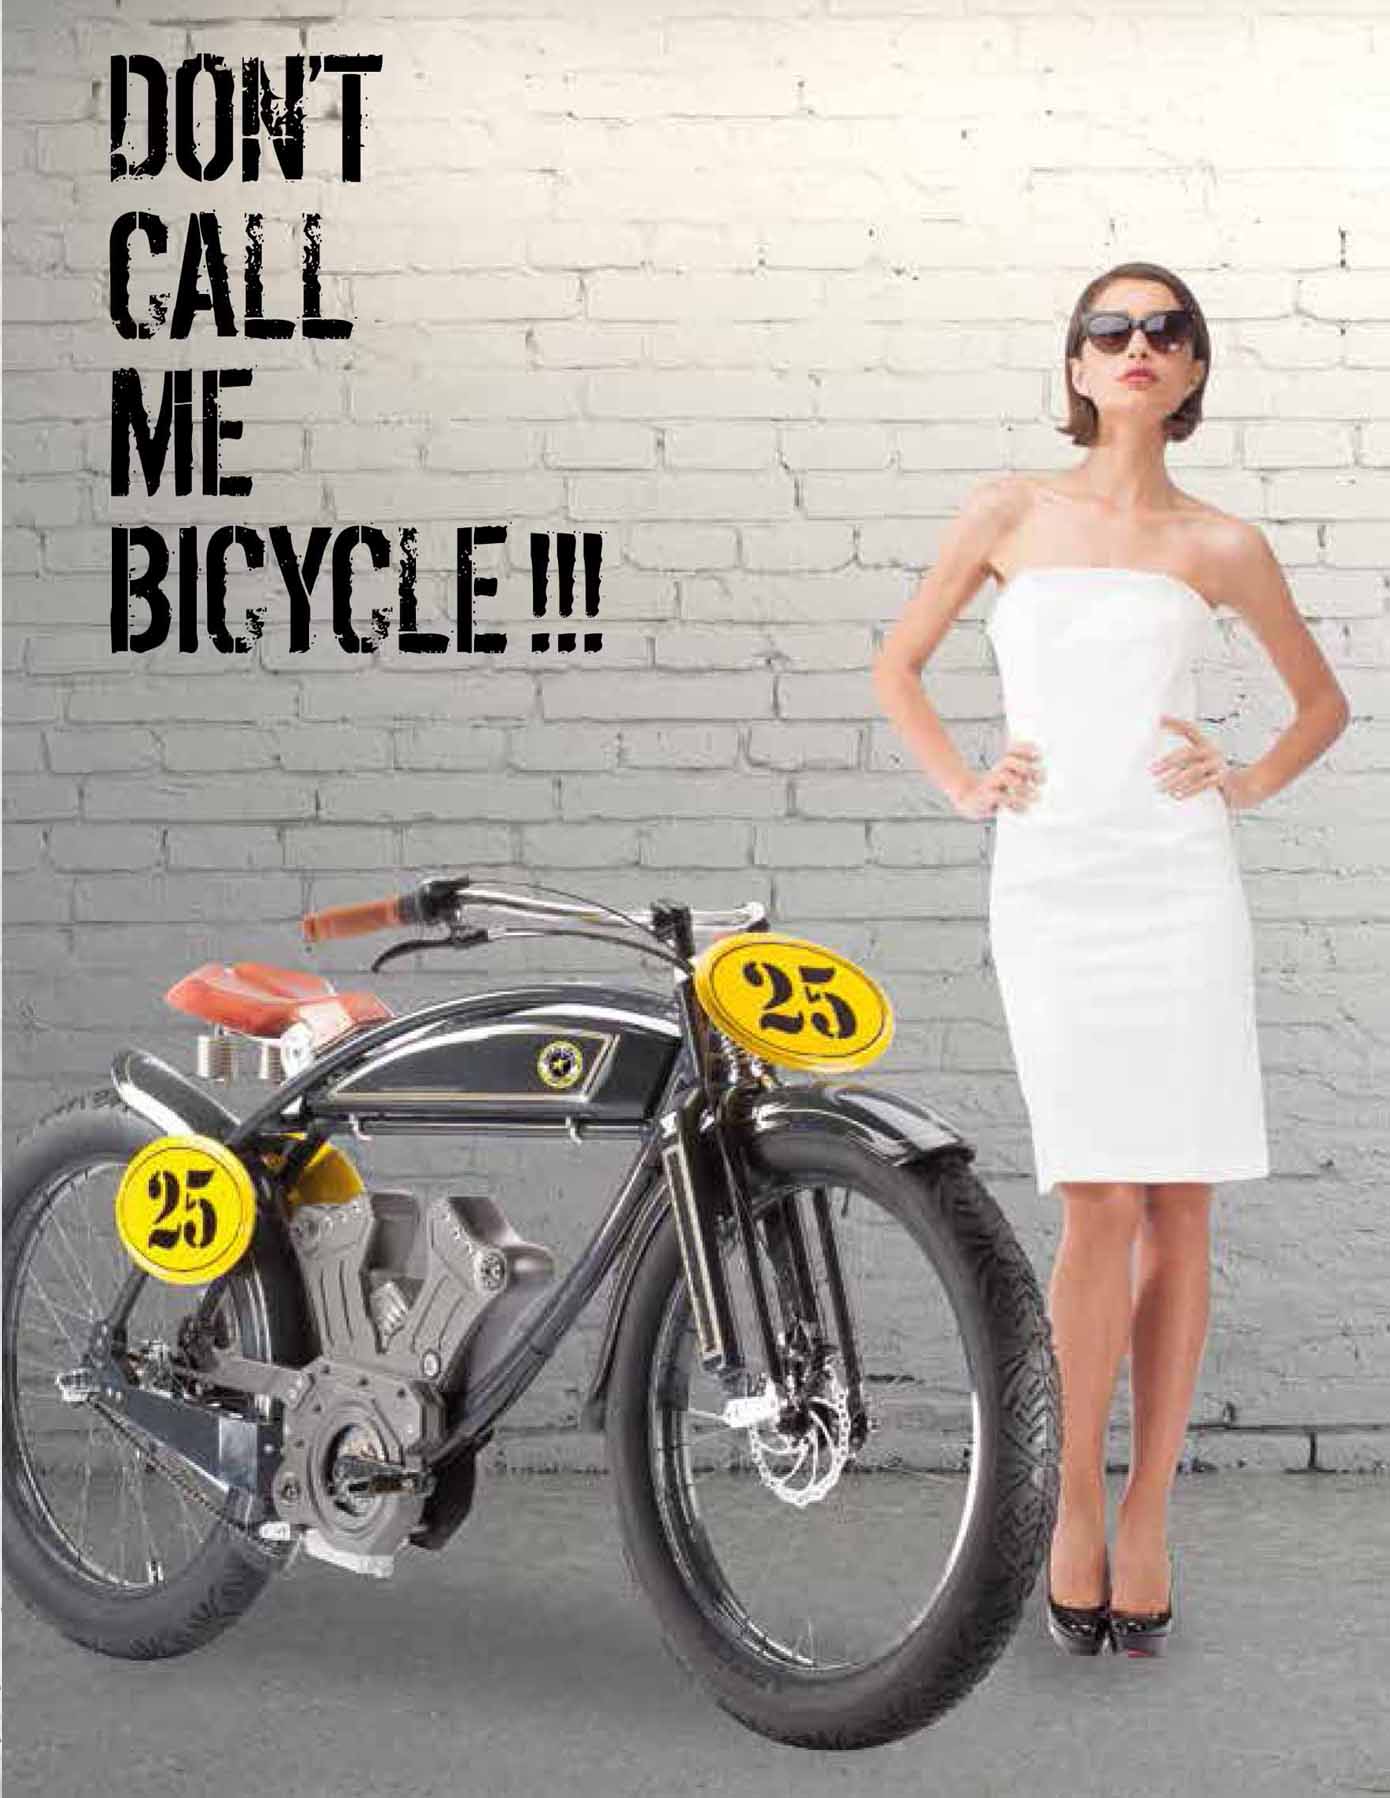 model-electric-bike-canton-fair-alessandro-tartarini-velocifero-collection